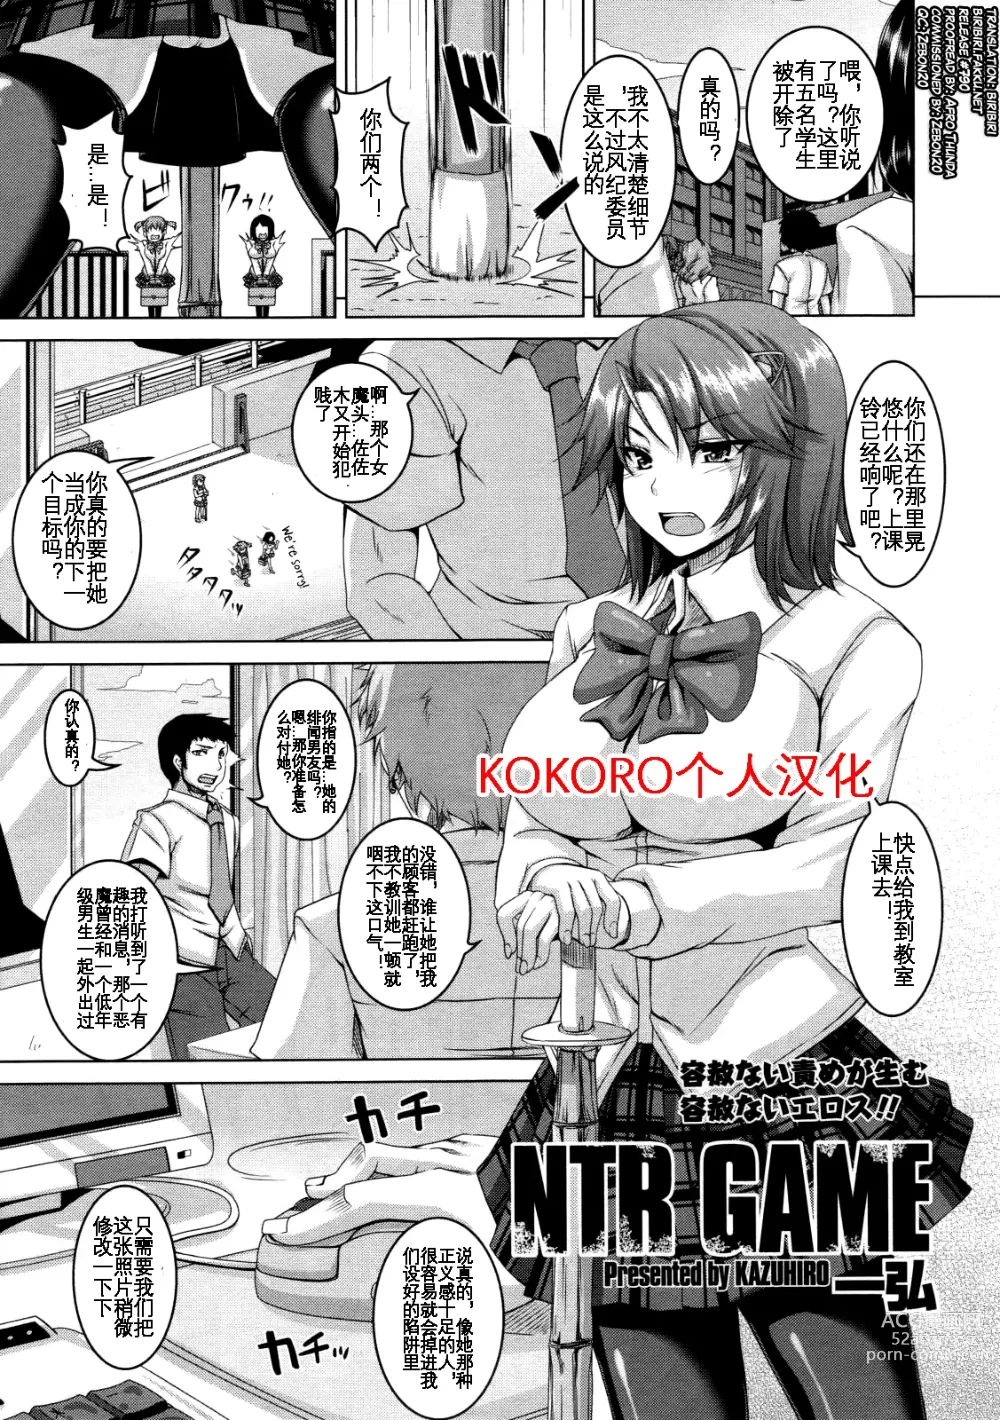 Page 1 of manga NTR GAME